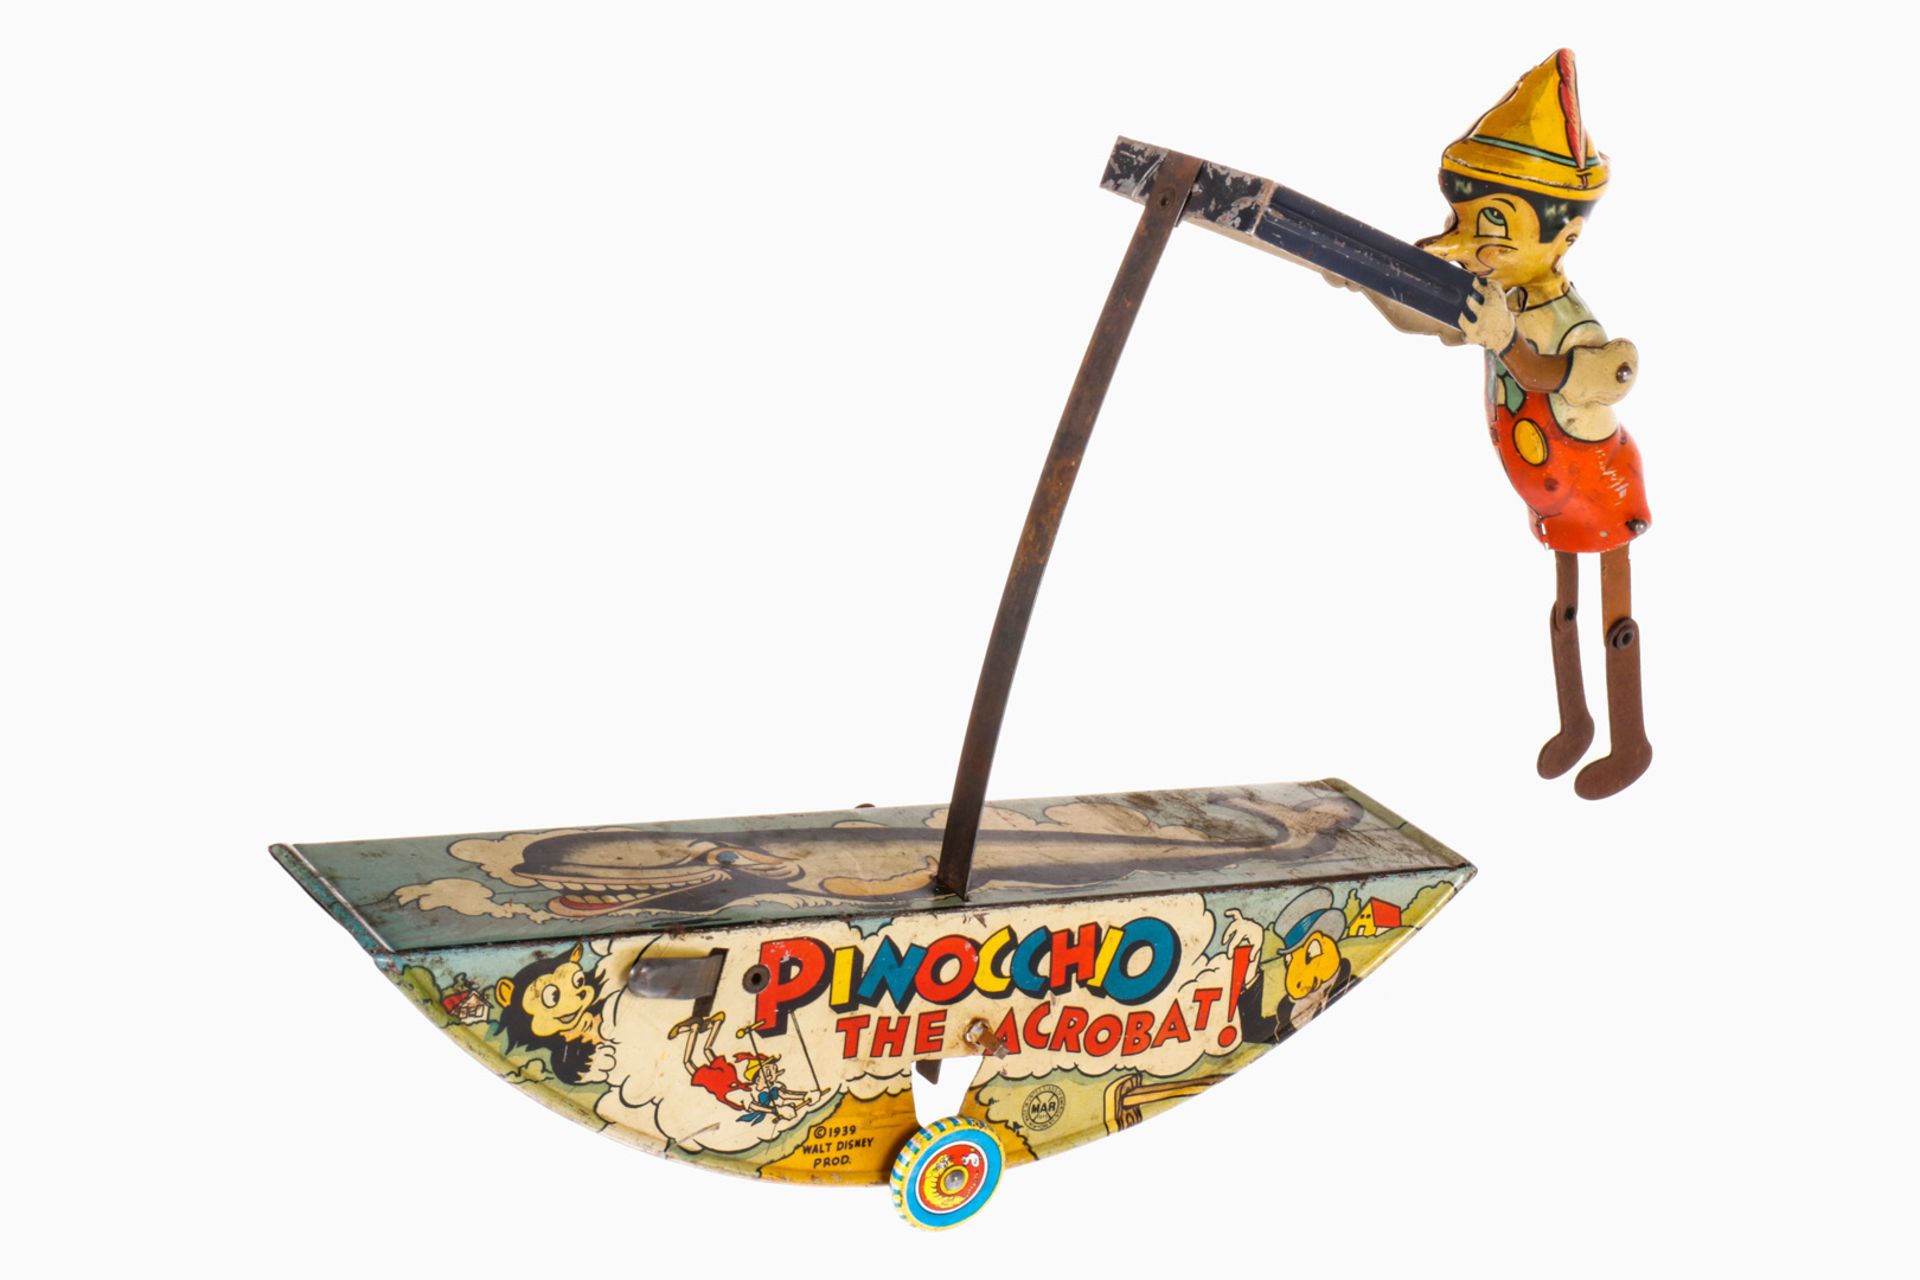 Marx ”Pinocchio The Acrobat!”, CL, Uhrwerk def., Alterungs- und Gebrauchsspuren, tw RS, L 28, Z 2-3